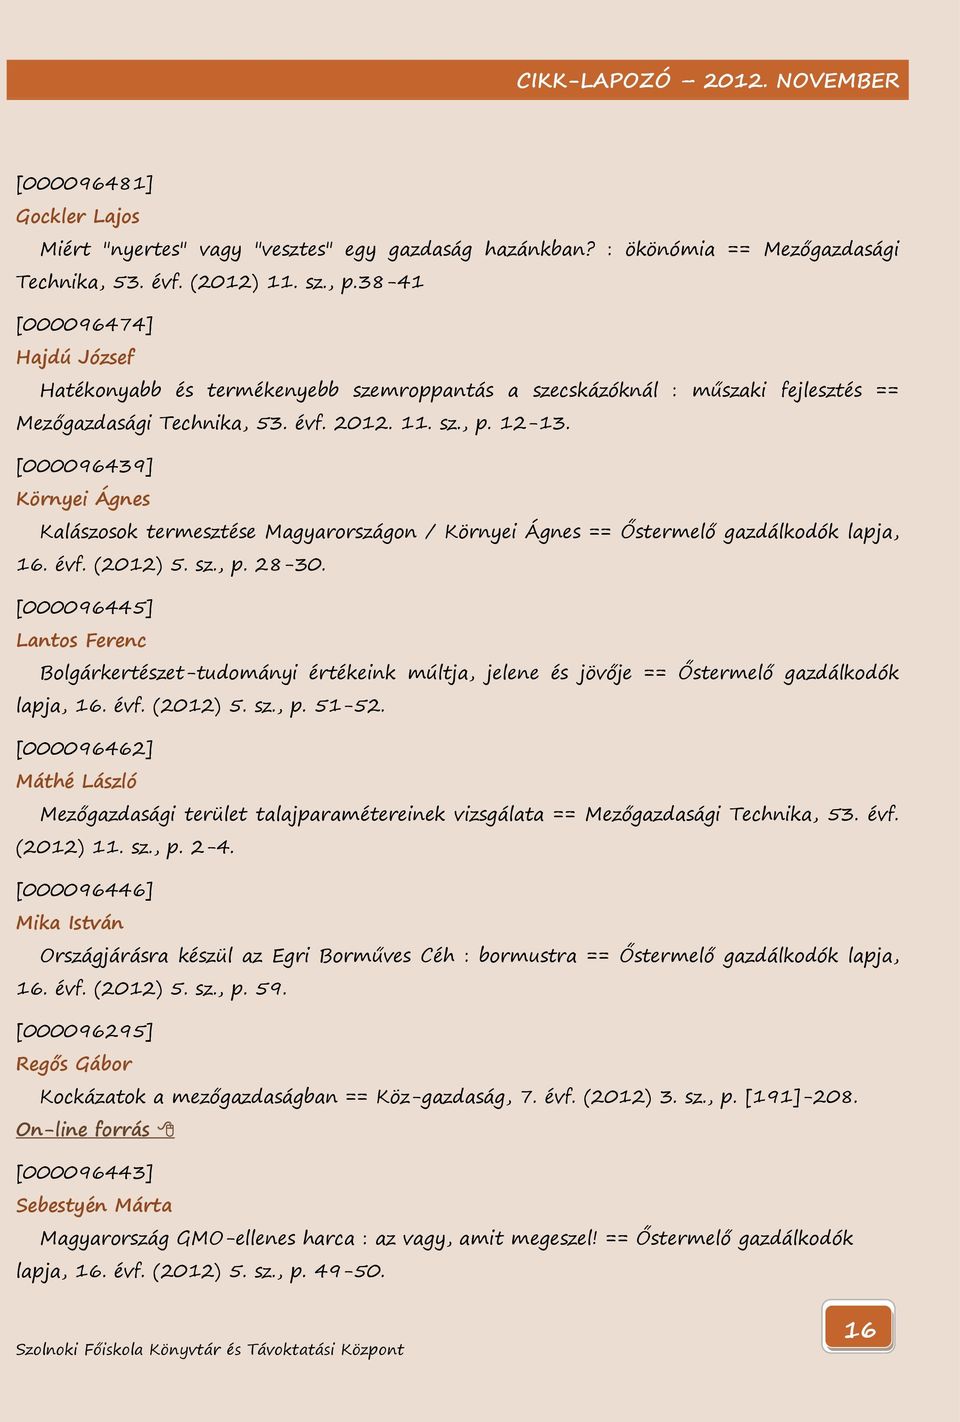 [000096439] Környei Ágnes Kalászosok termesztése Magyarországon / Környei Ágnes == Őstermelő gazdálkodók lapja, 16. évf. (2012) 5. sz., p. 28-30.